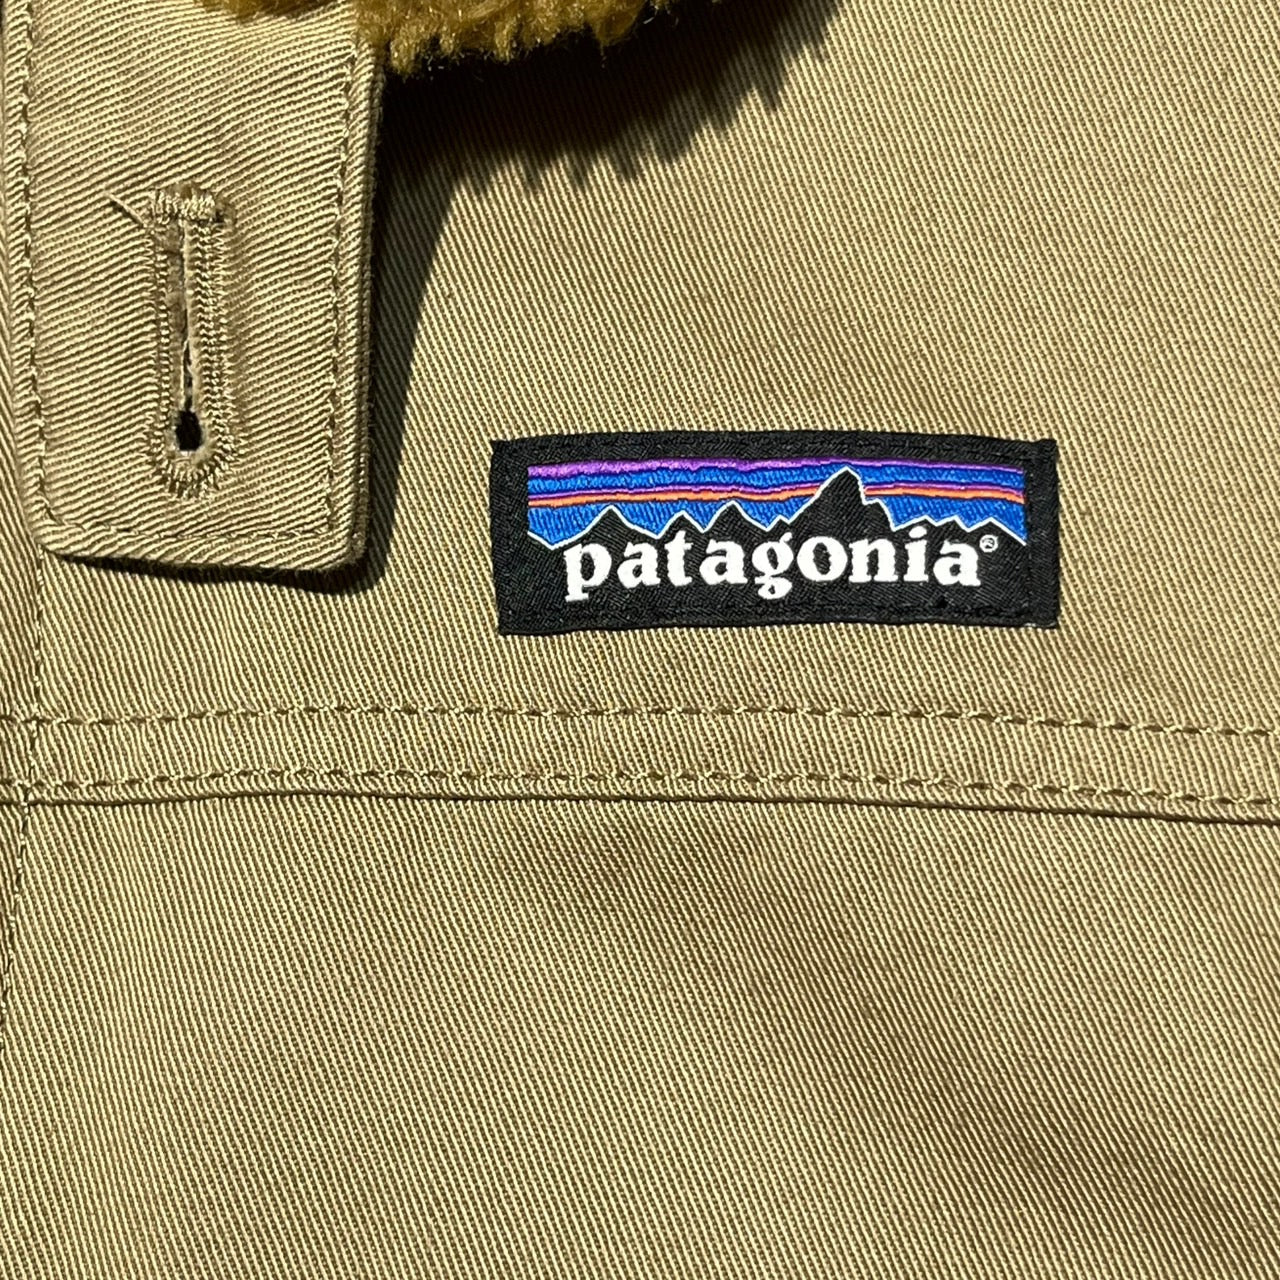 Patagonia(パタゴニア) 21AW Maple Grove Deck Jacket/メープル・グローブ・デック・ジャケット/裏ボアジャケット 26996 F21 M カーキ(ベージュ)